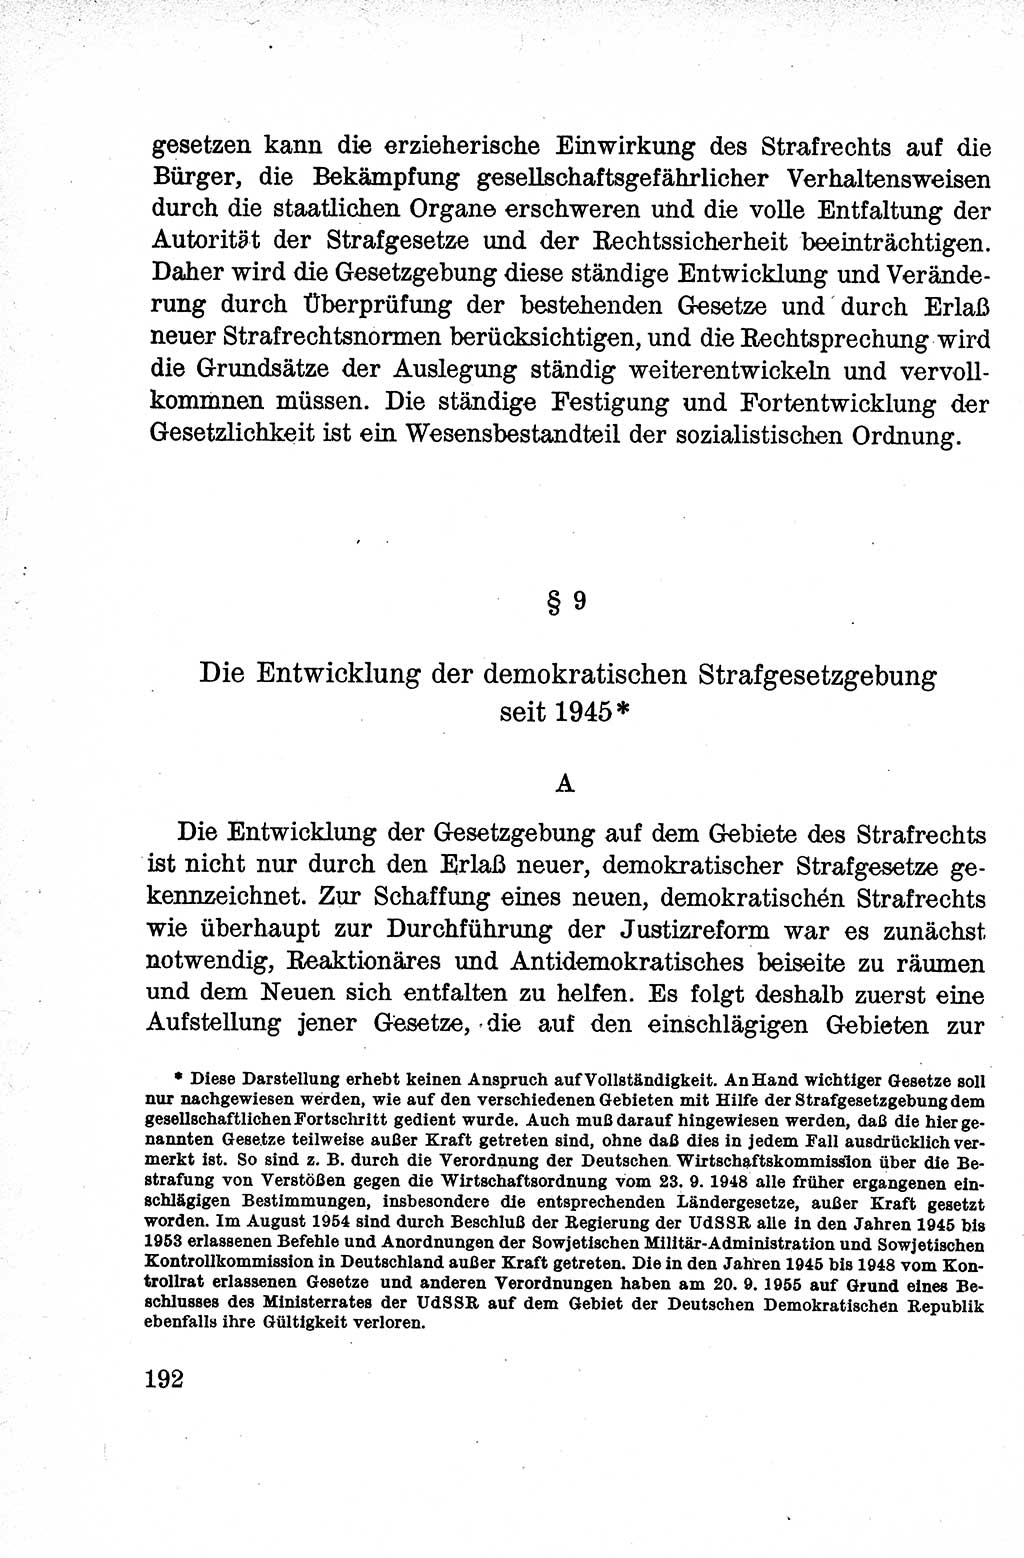 Lehrbuch des Strafrechts der Deutschen Demokratischen Republik (DDR), Allgemeiner Teil 1959, Seite 192 (Lb. Strafr. DDR AT 1959, S. 192)